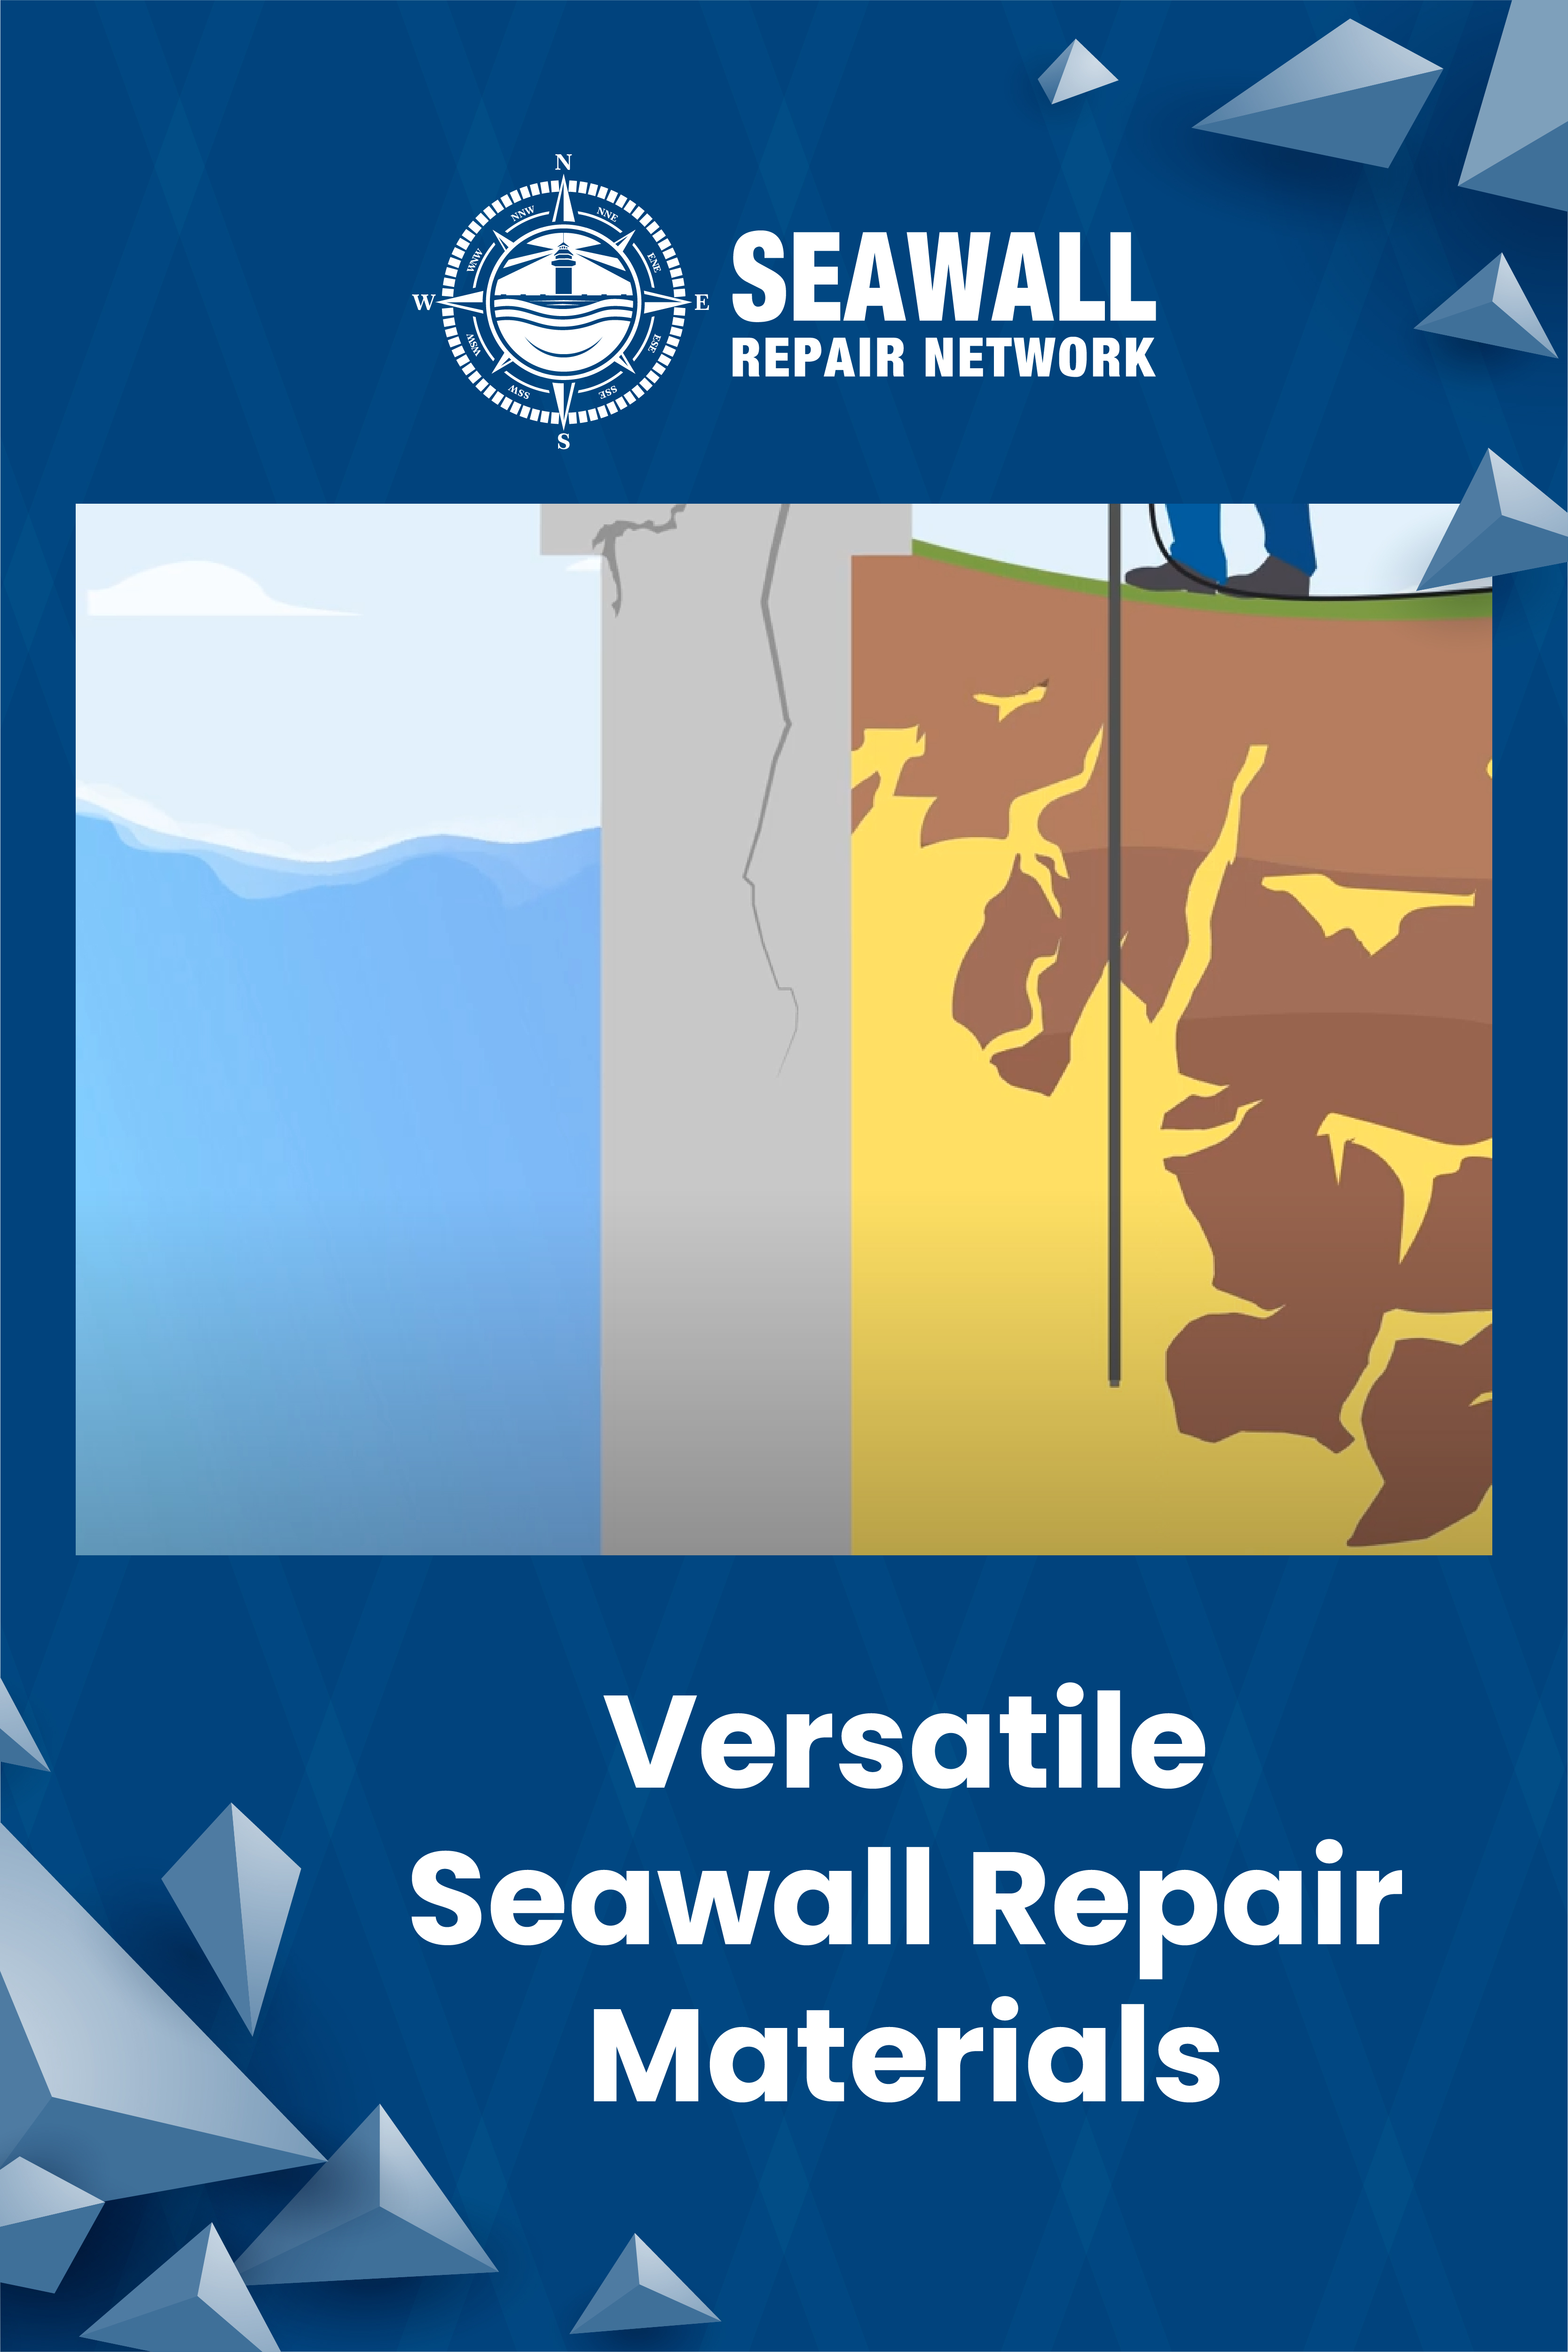 Body - Versatile Seawall Repair Materials